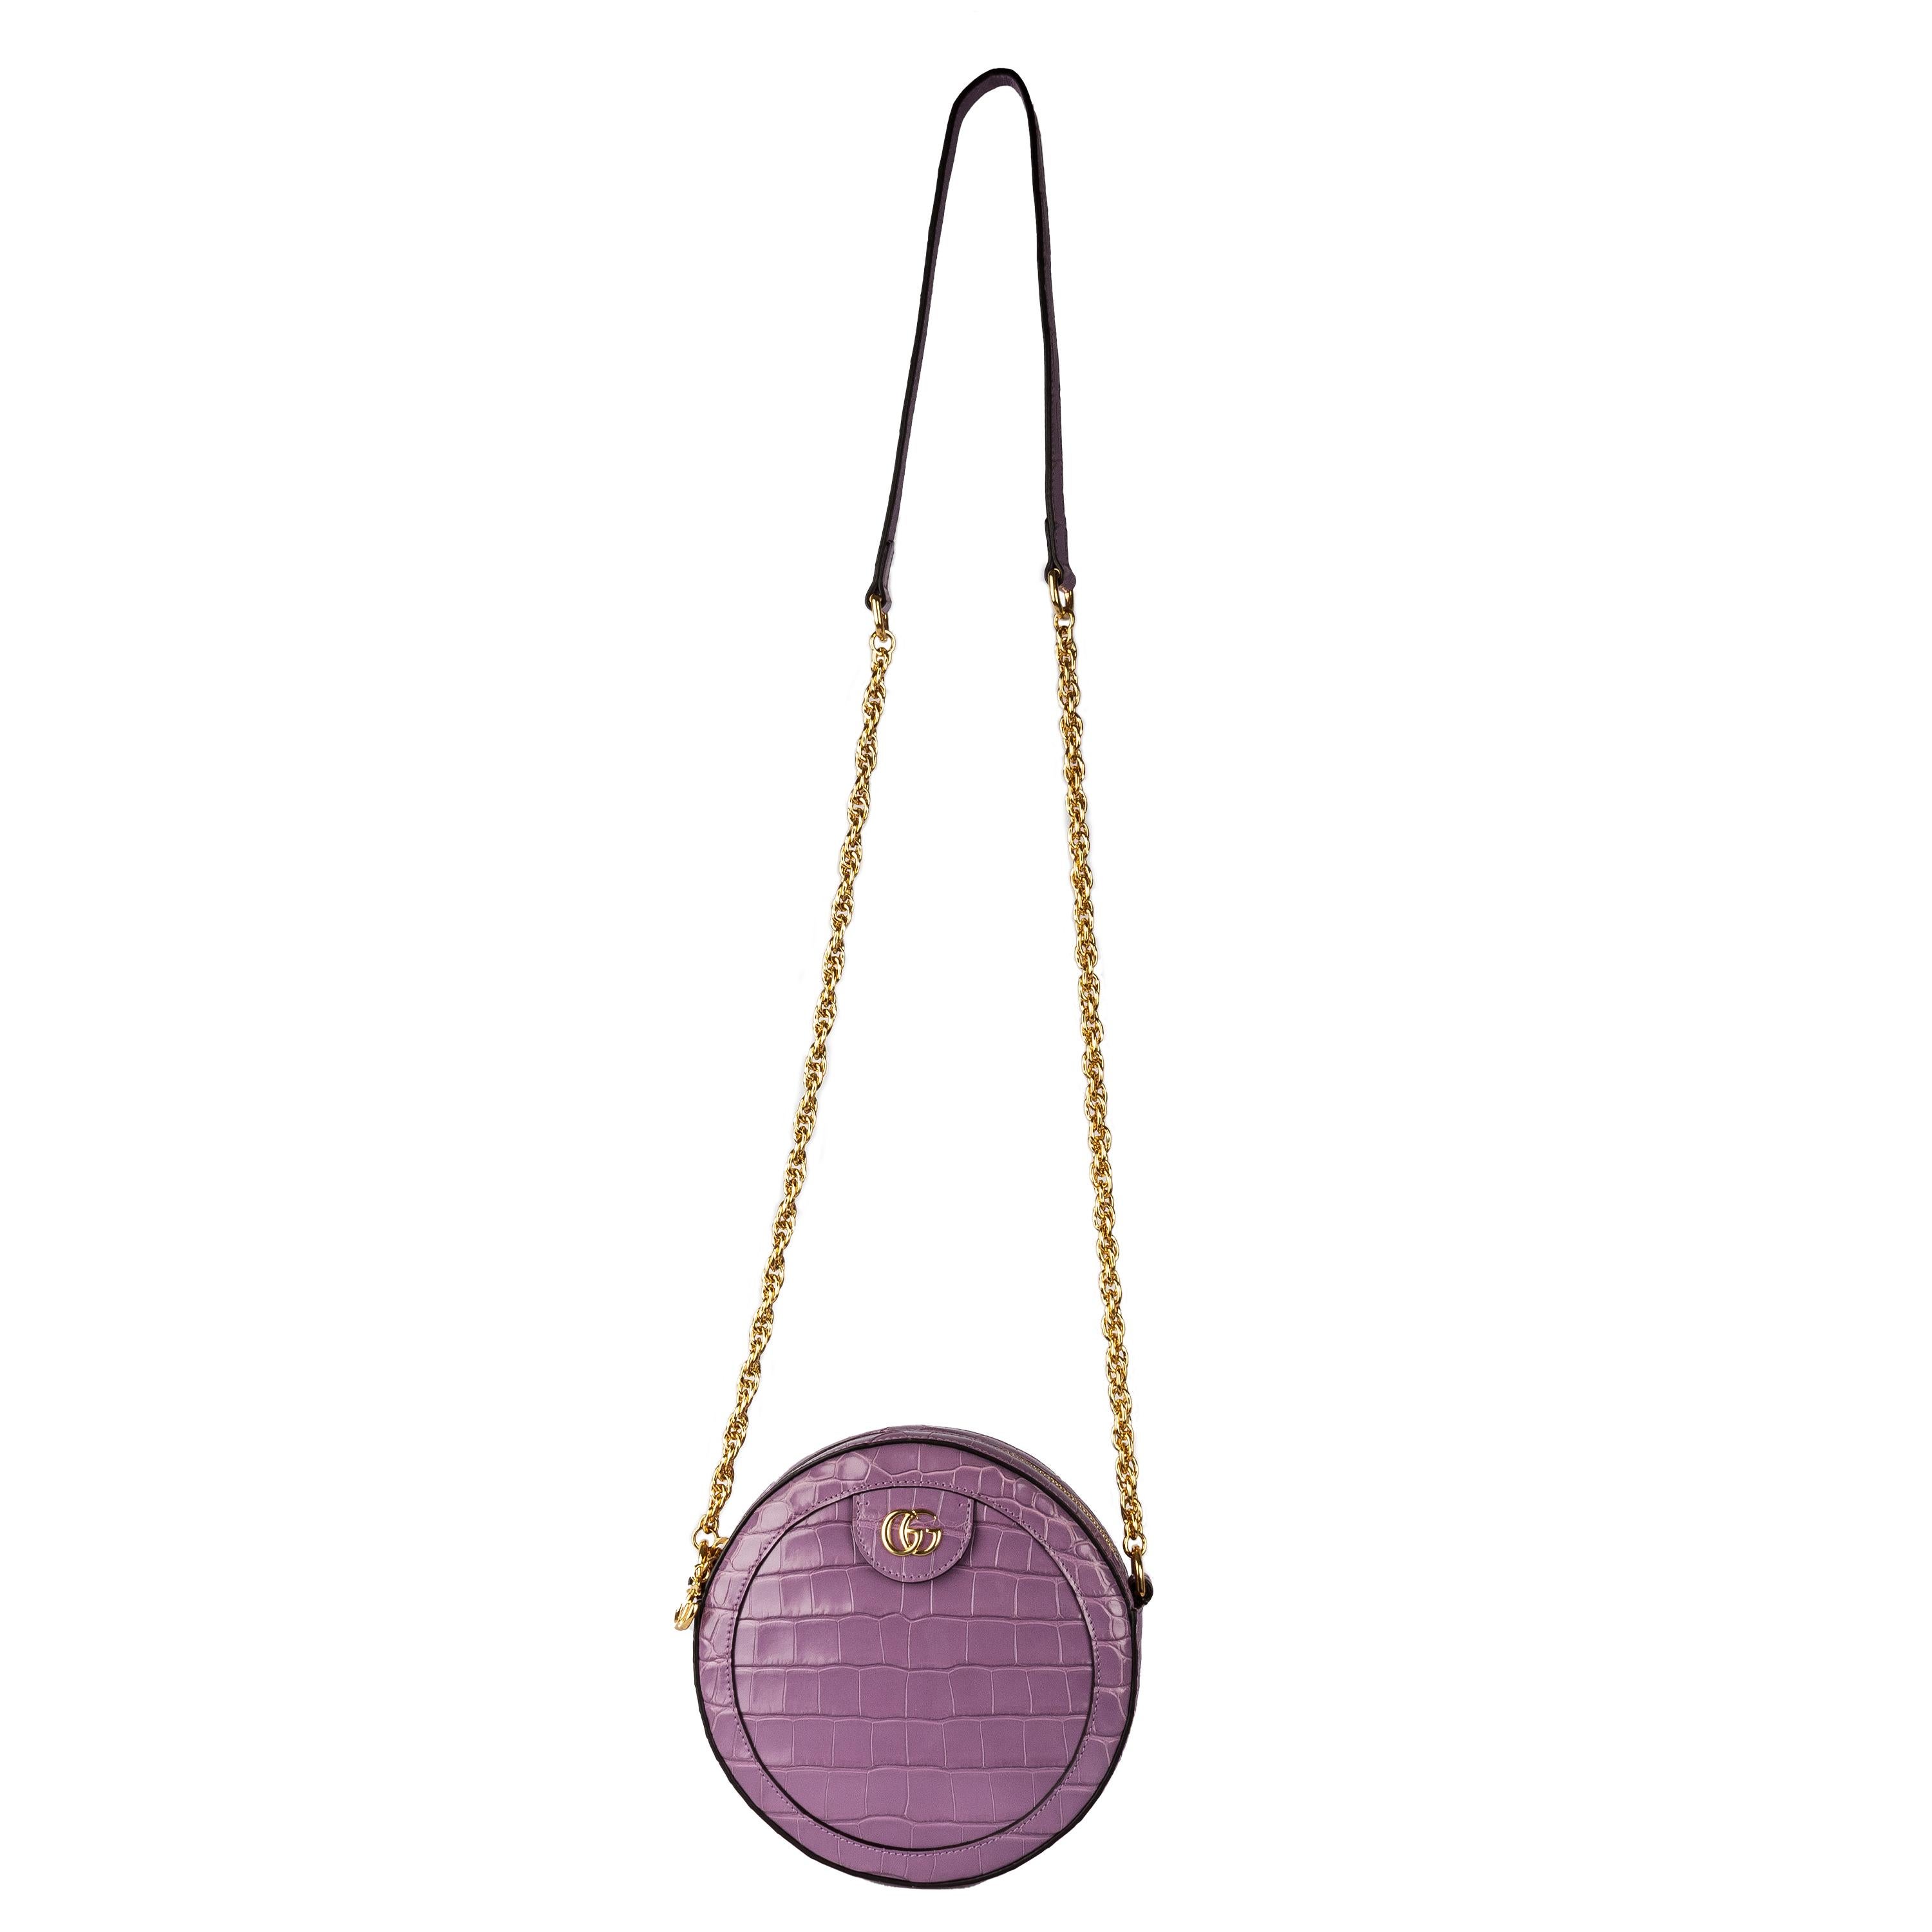 La gamme Eleg accueille un mini sac rond en opulent cuir de crocodile, présenté dans une élégante couleur lilas. Confectionné en cuir de crocodile luxueux, ce sac à bandoulière Gucci Ophidia rehaussera n'importe quelle tenue. Il est doté d'une